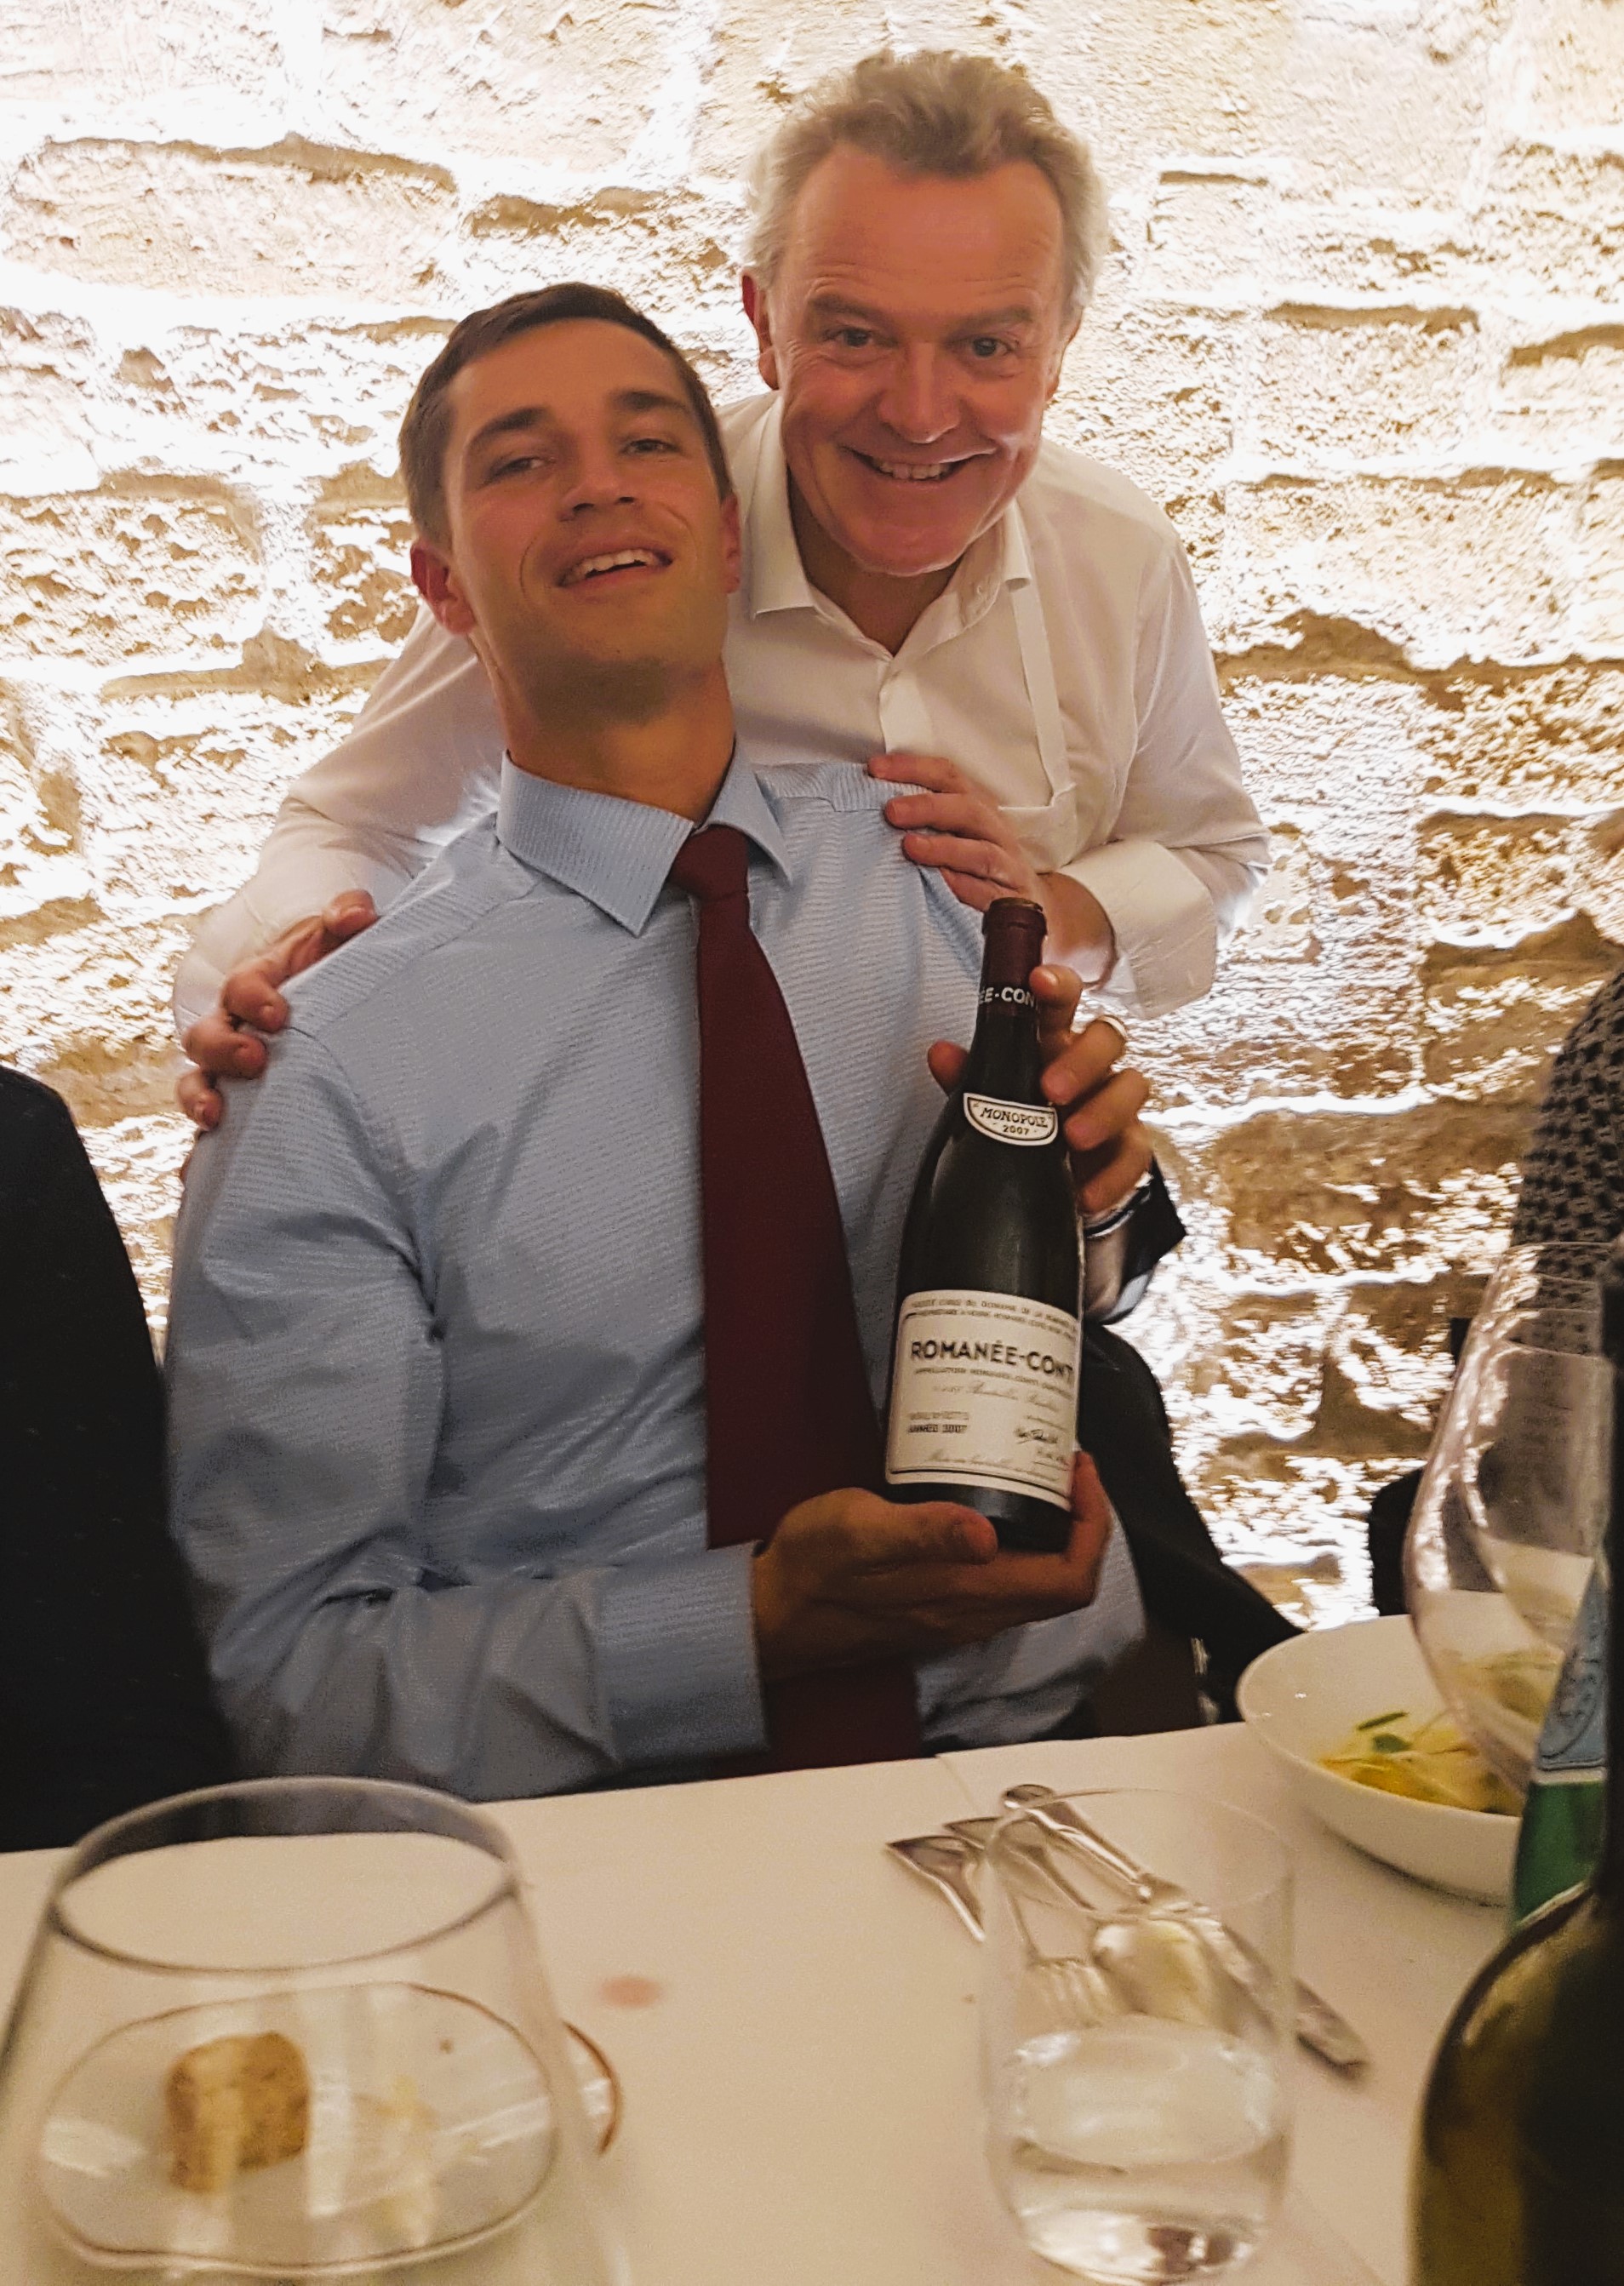 Grand moment de gastronomie et de vins rares avec Alain Passard